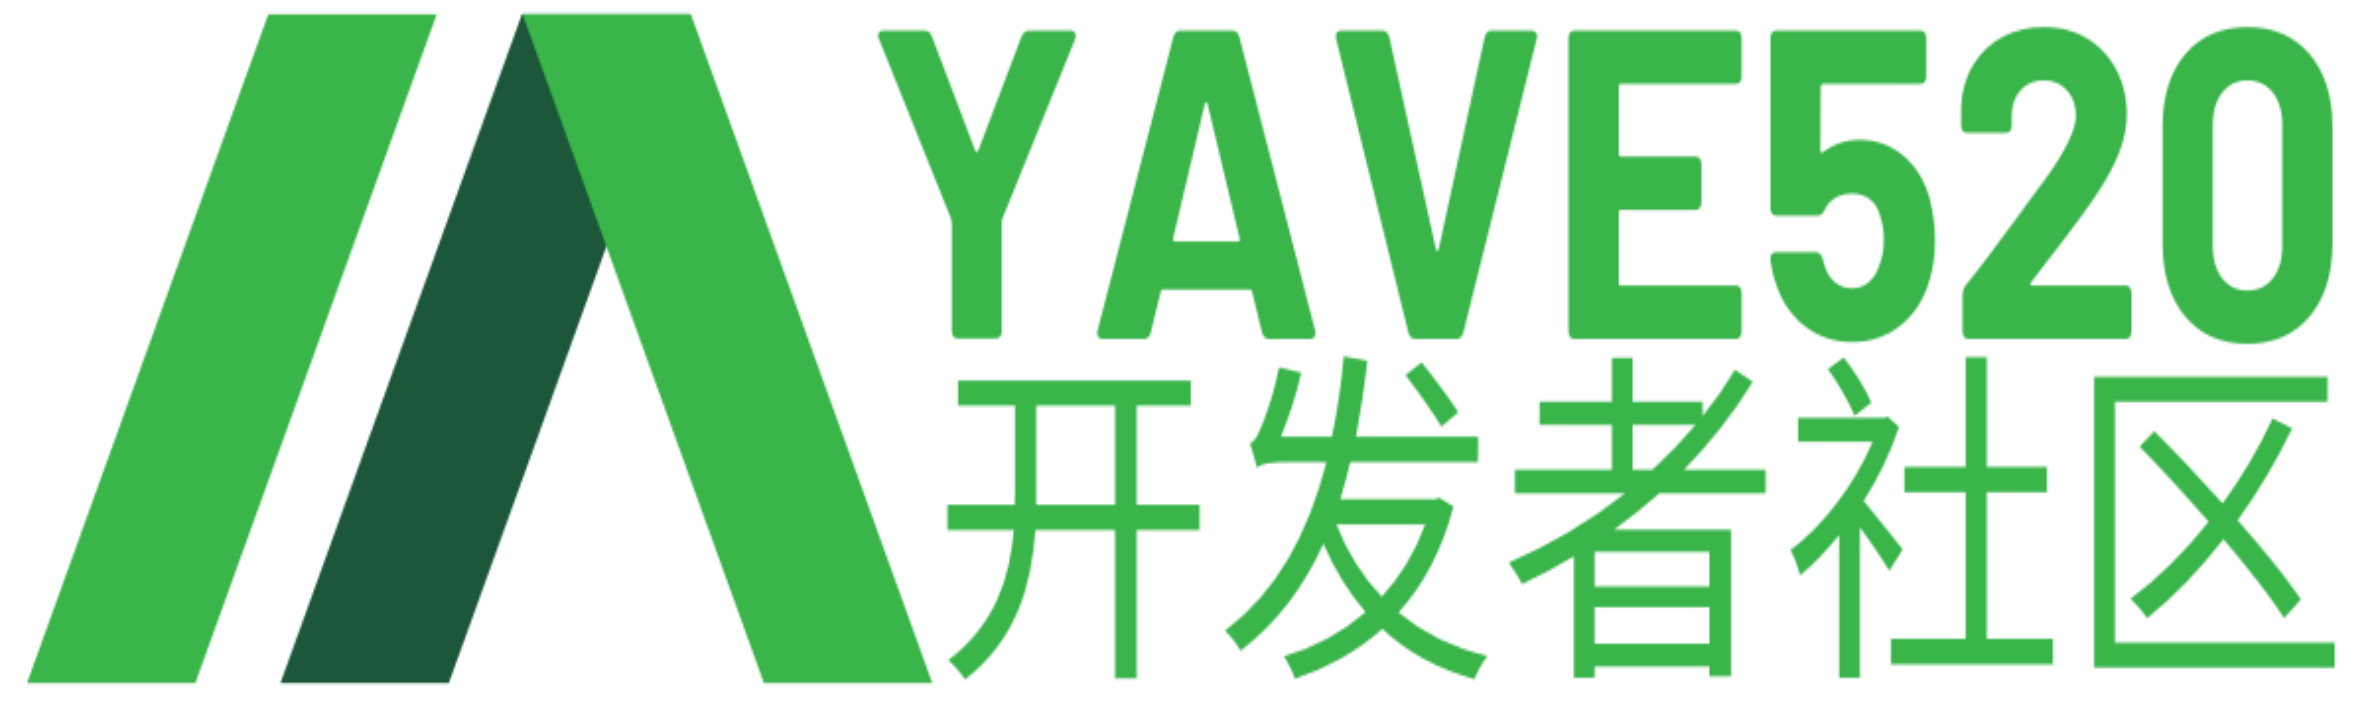 资源下载-Yave520-专业开发者社区